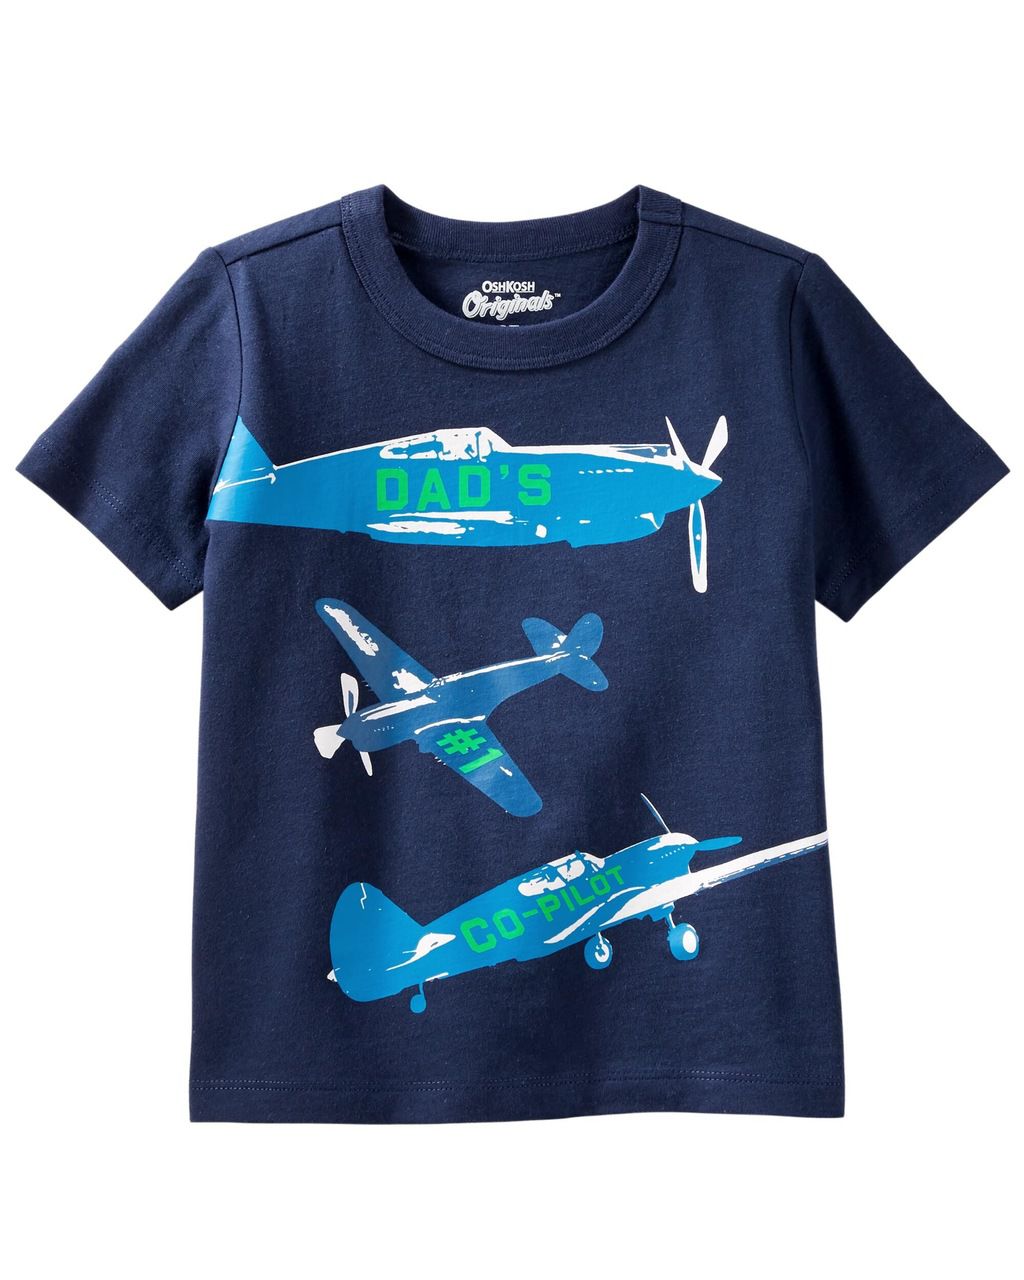 Camiseta Aviões Oshkosh